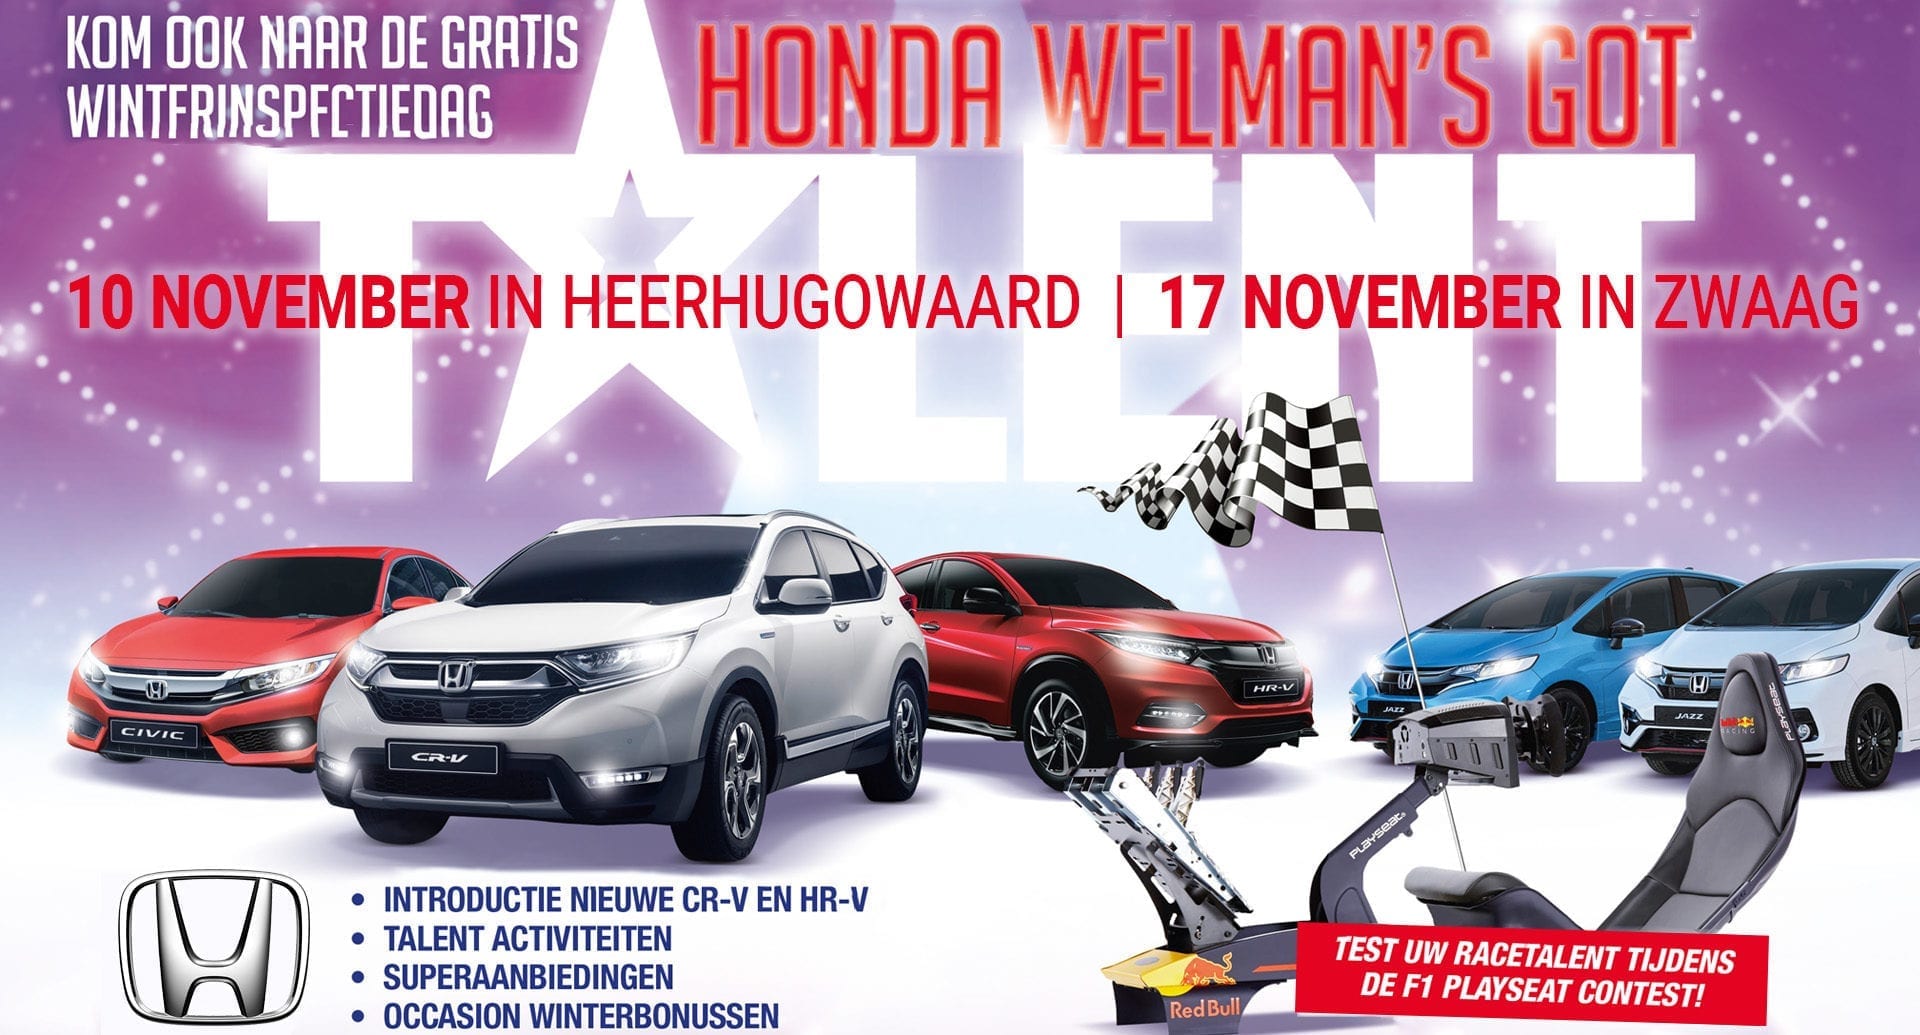 Honda Welman's Got Talent - winterinspectie